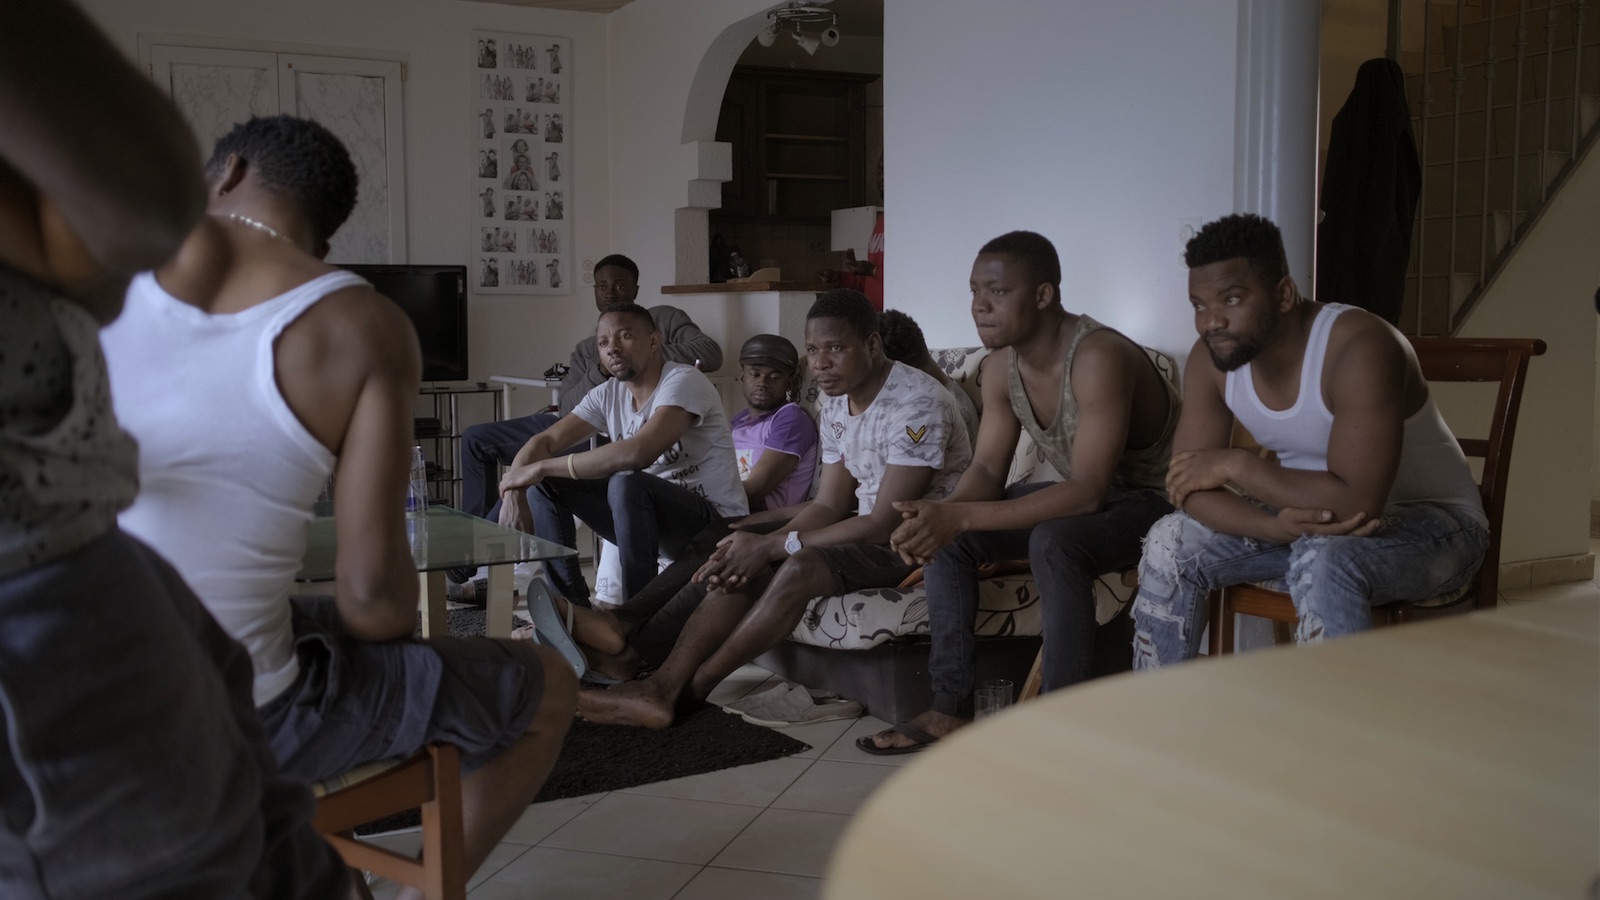 Image tirée du documentaire. Plusieurs hommes en discussion dans un séjour.